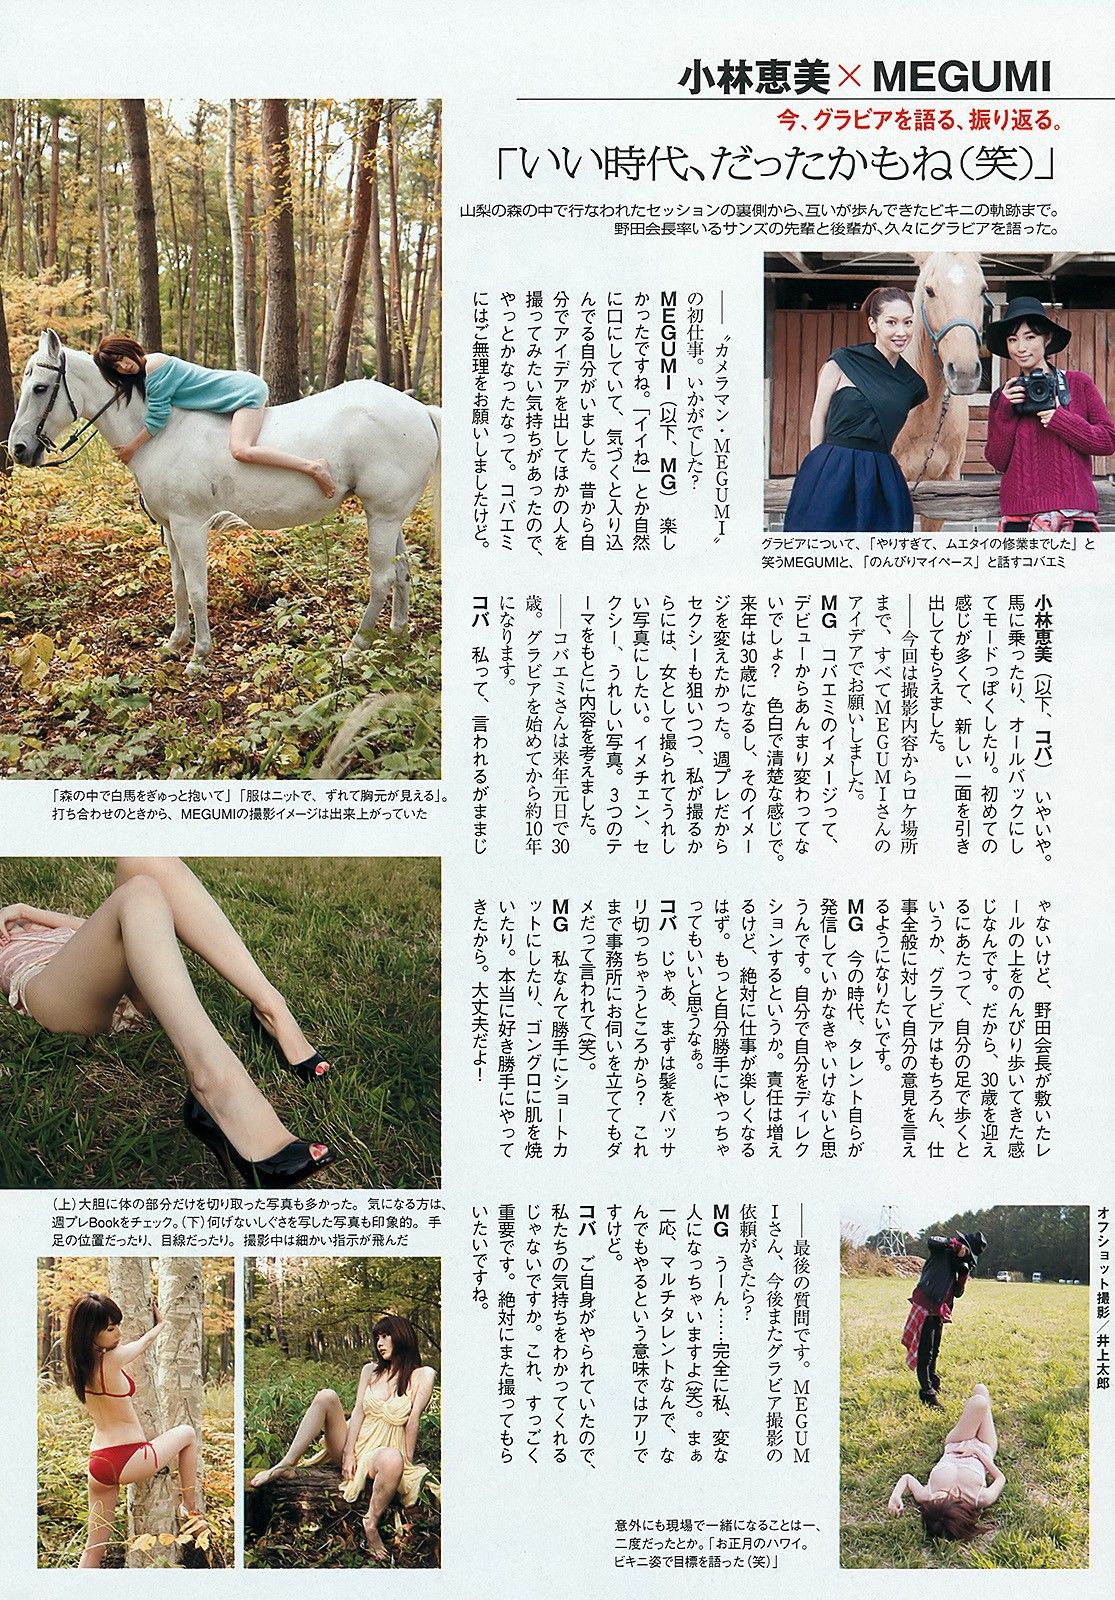 深田恭子 小林恵美 市川由衣 青野未来 AKB48[Weekly Playboy] No.483